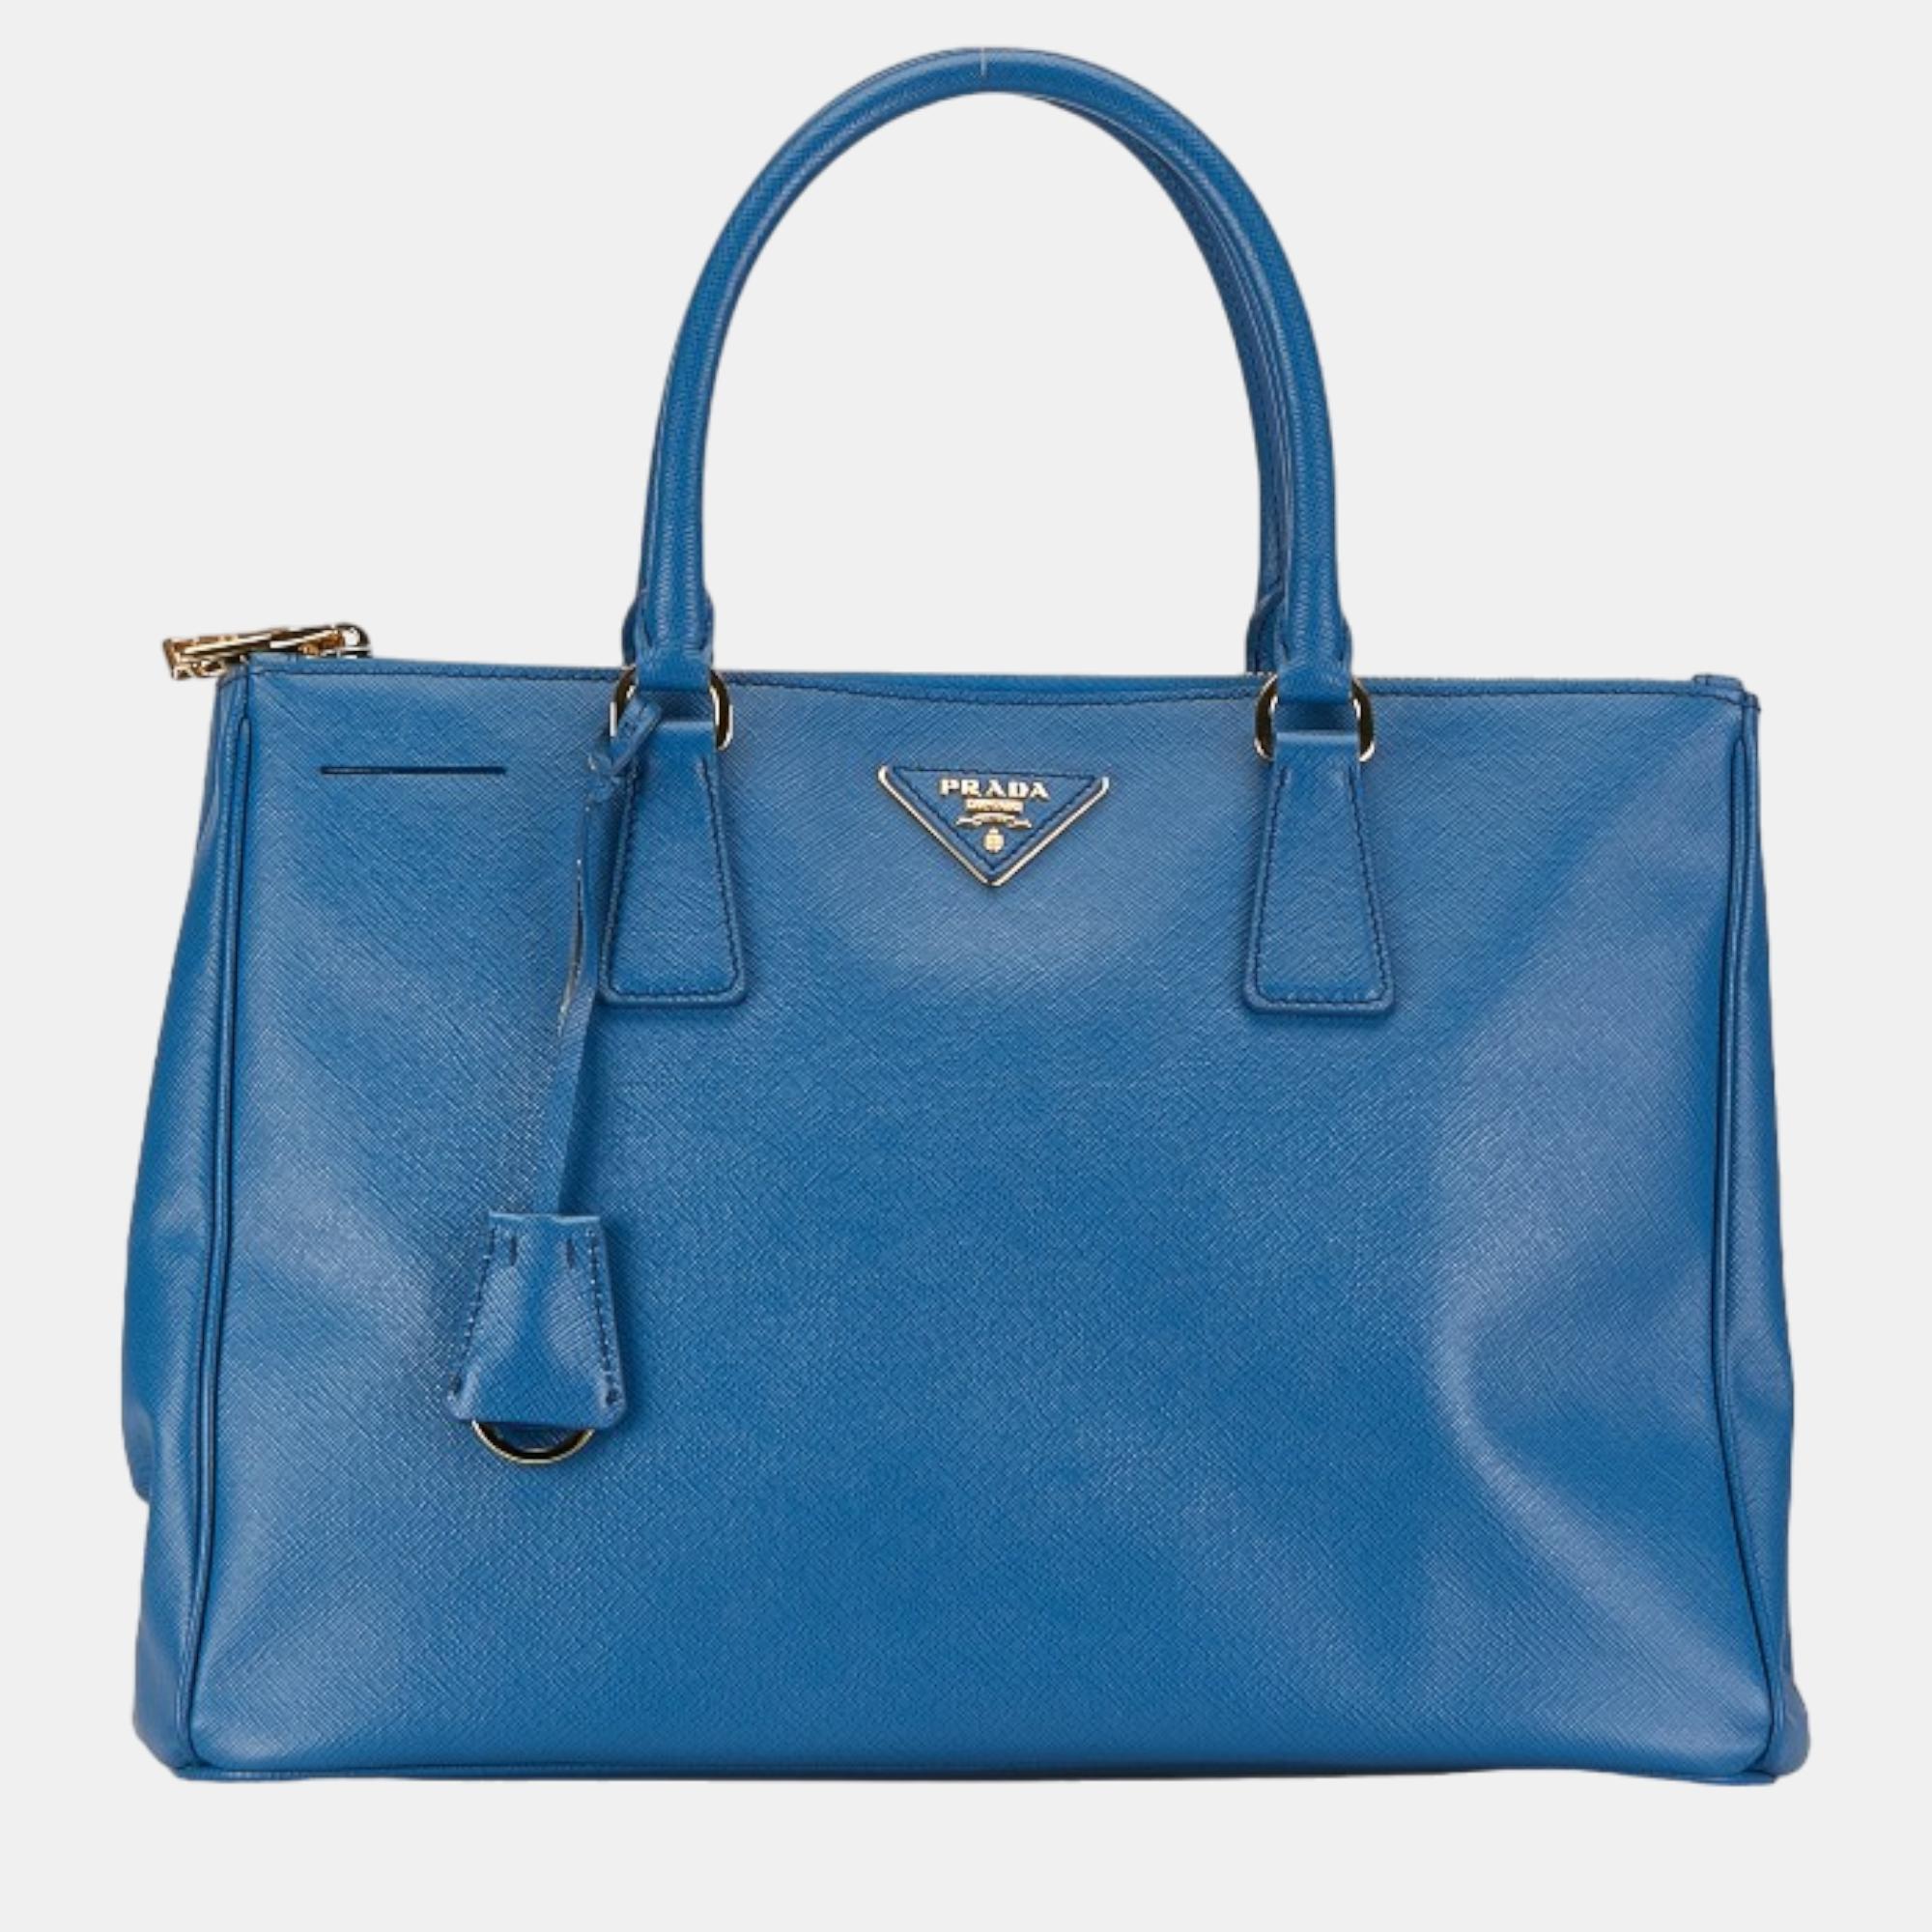 

Prada Blue Leather Saffiano Lux Galleria Medium Tote Handbag